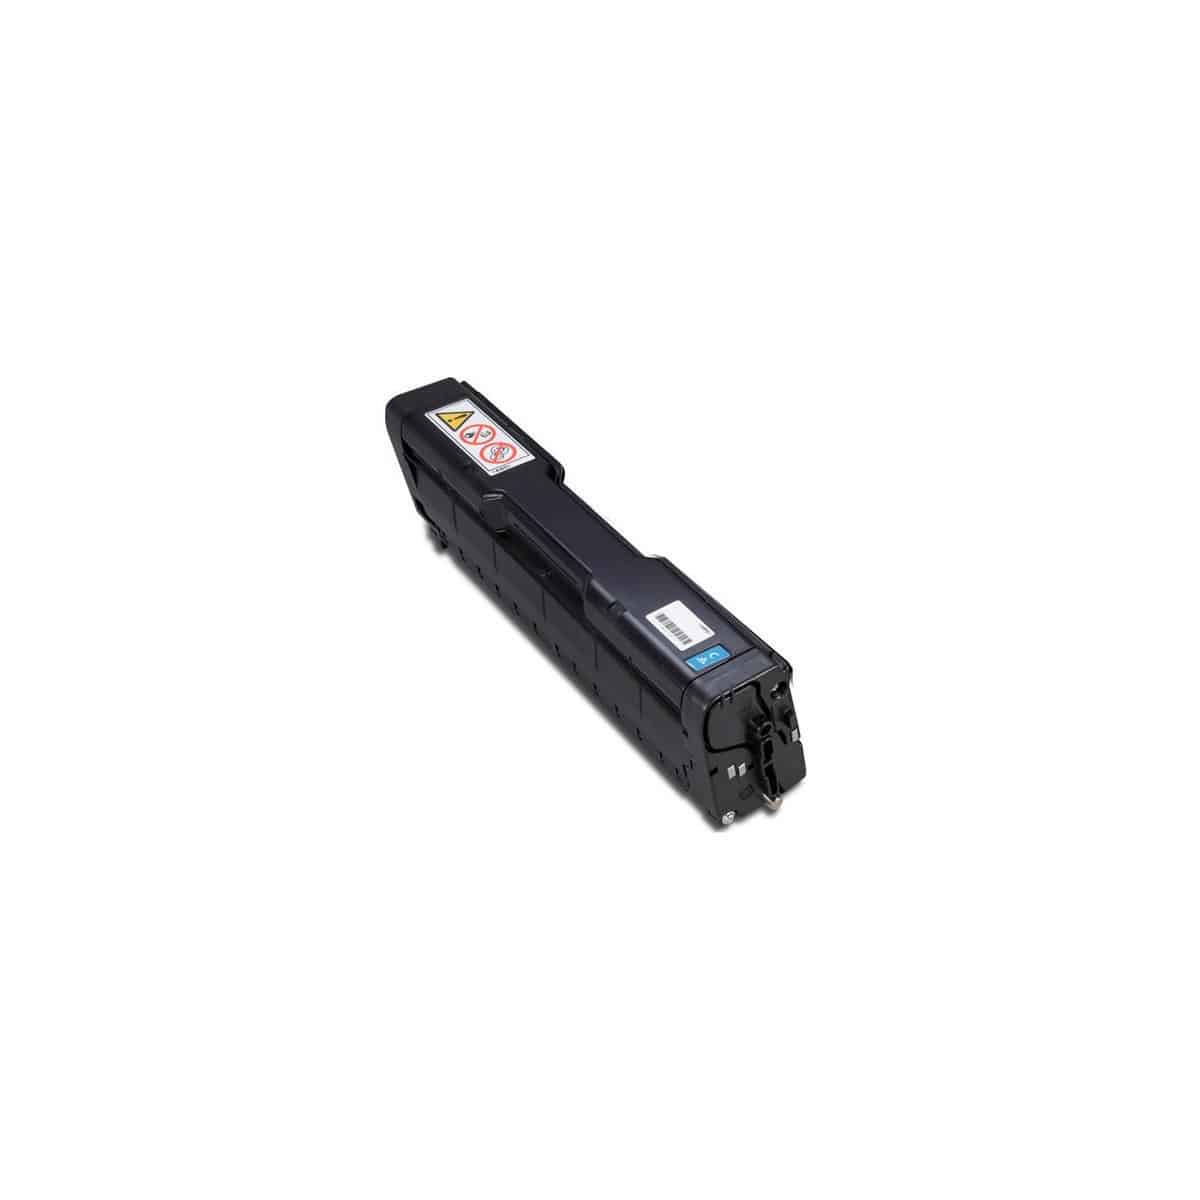 SP-C250 / C260 / C261 Toner laser compatible Ricoh 407544 - Cyan